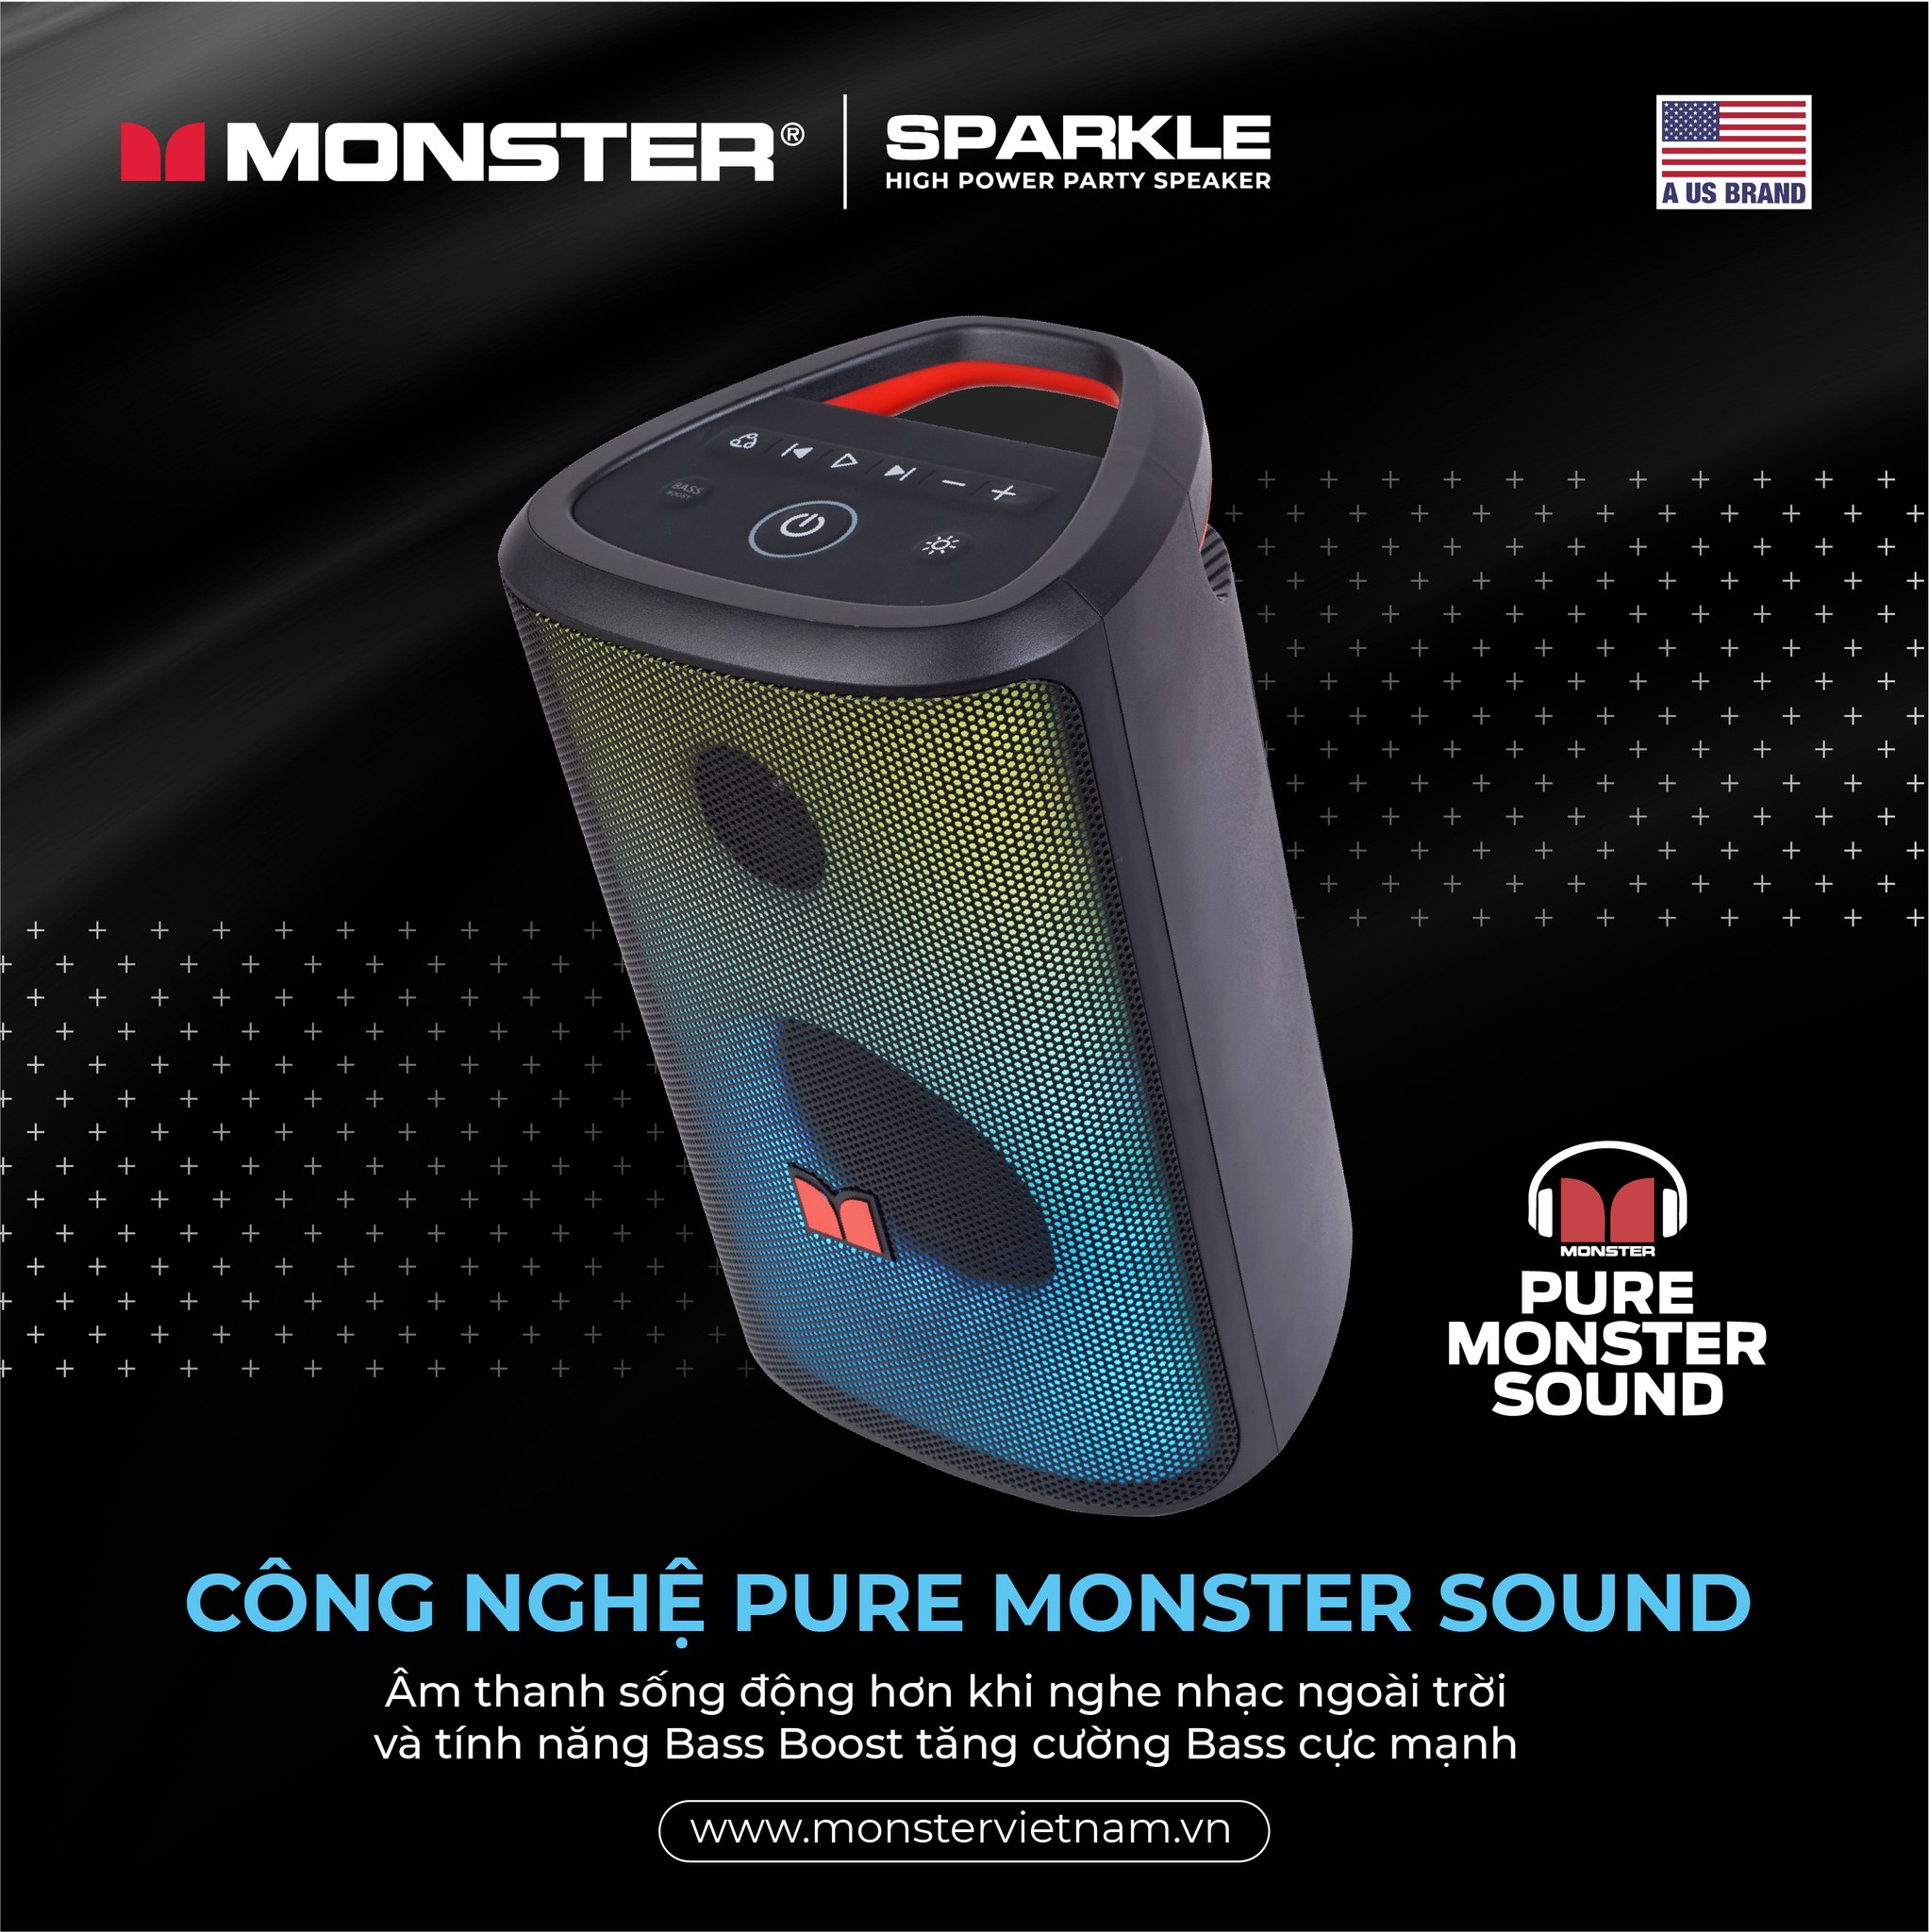 Loa Bluetooth Monster Sparkle (Thời lượng pin 12 giờ) - Hàng chính hãng